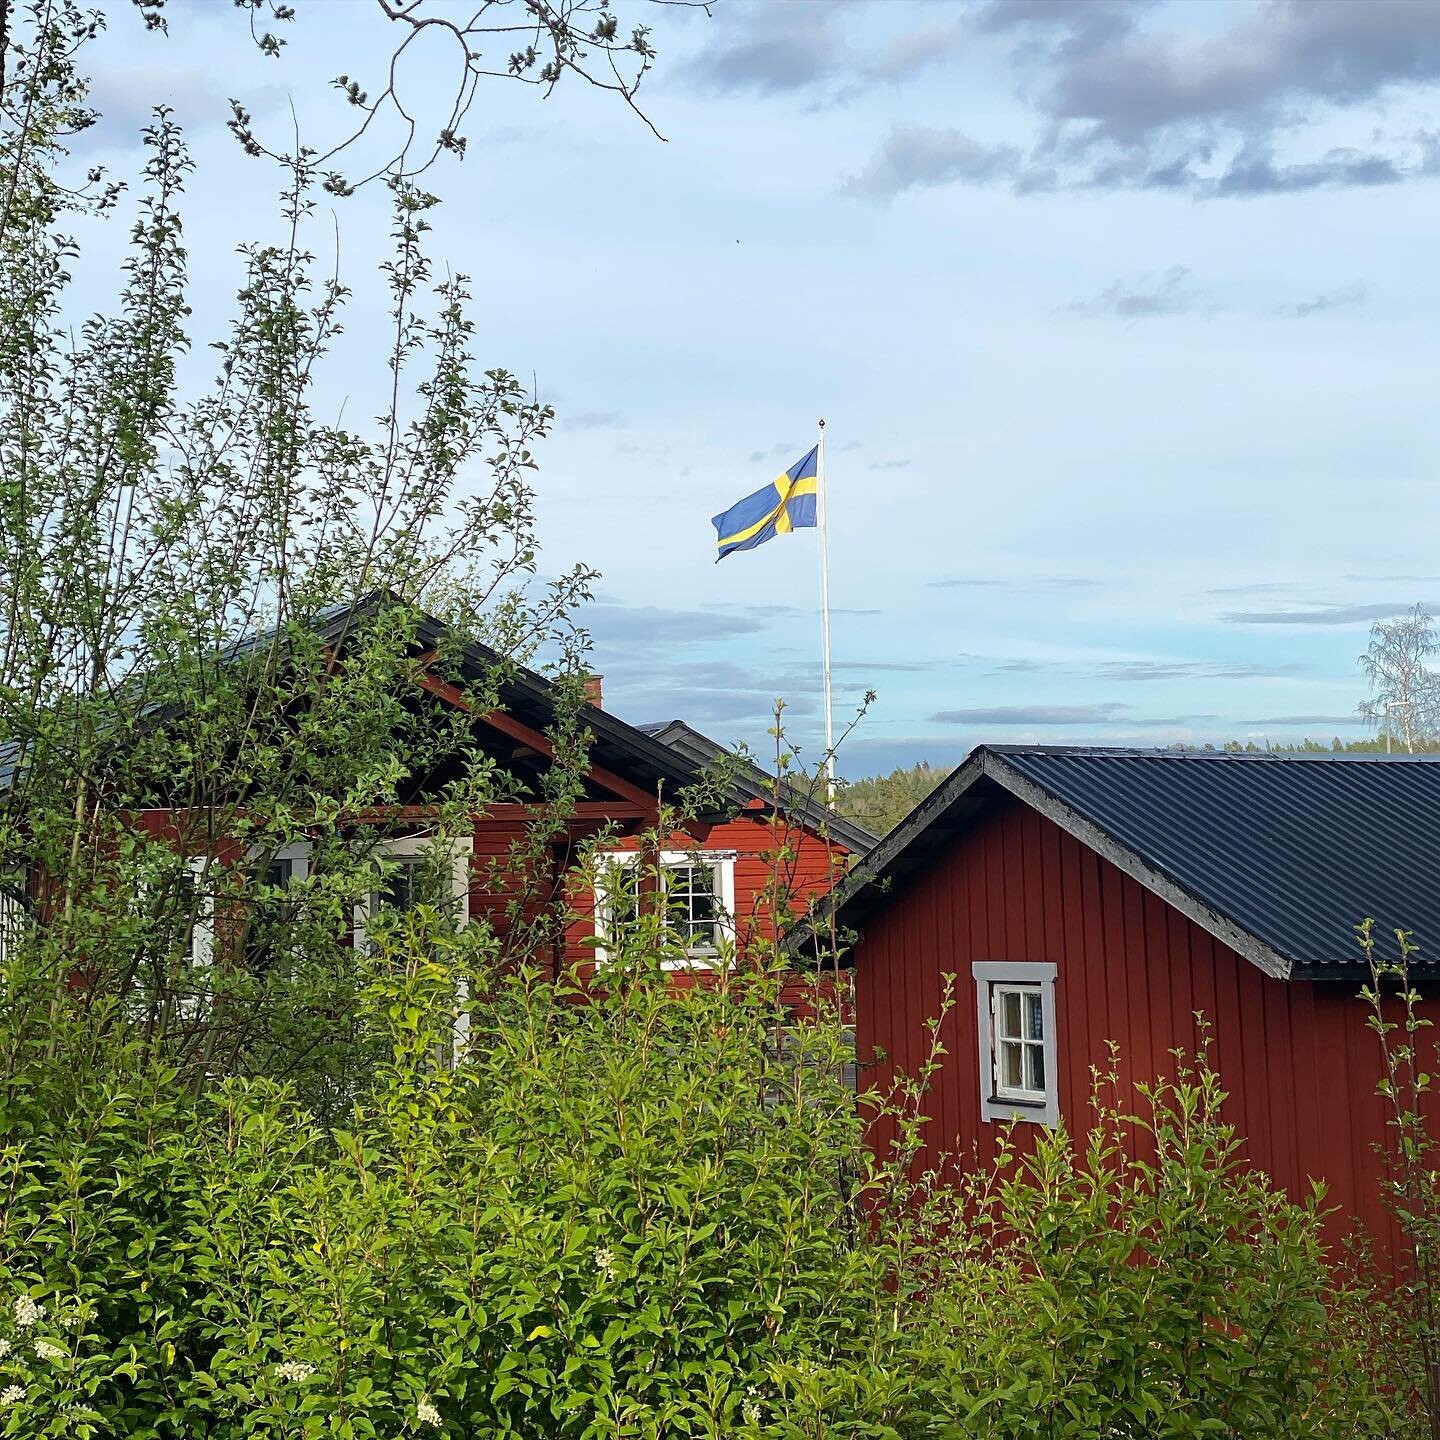 Grattis Sverige! 🇸🇪🌟
.
.
.
#sverigesnationaldag #dalarna 
#visitdalarna #svenskaflaggansdag #flagganitopp #juni